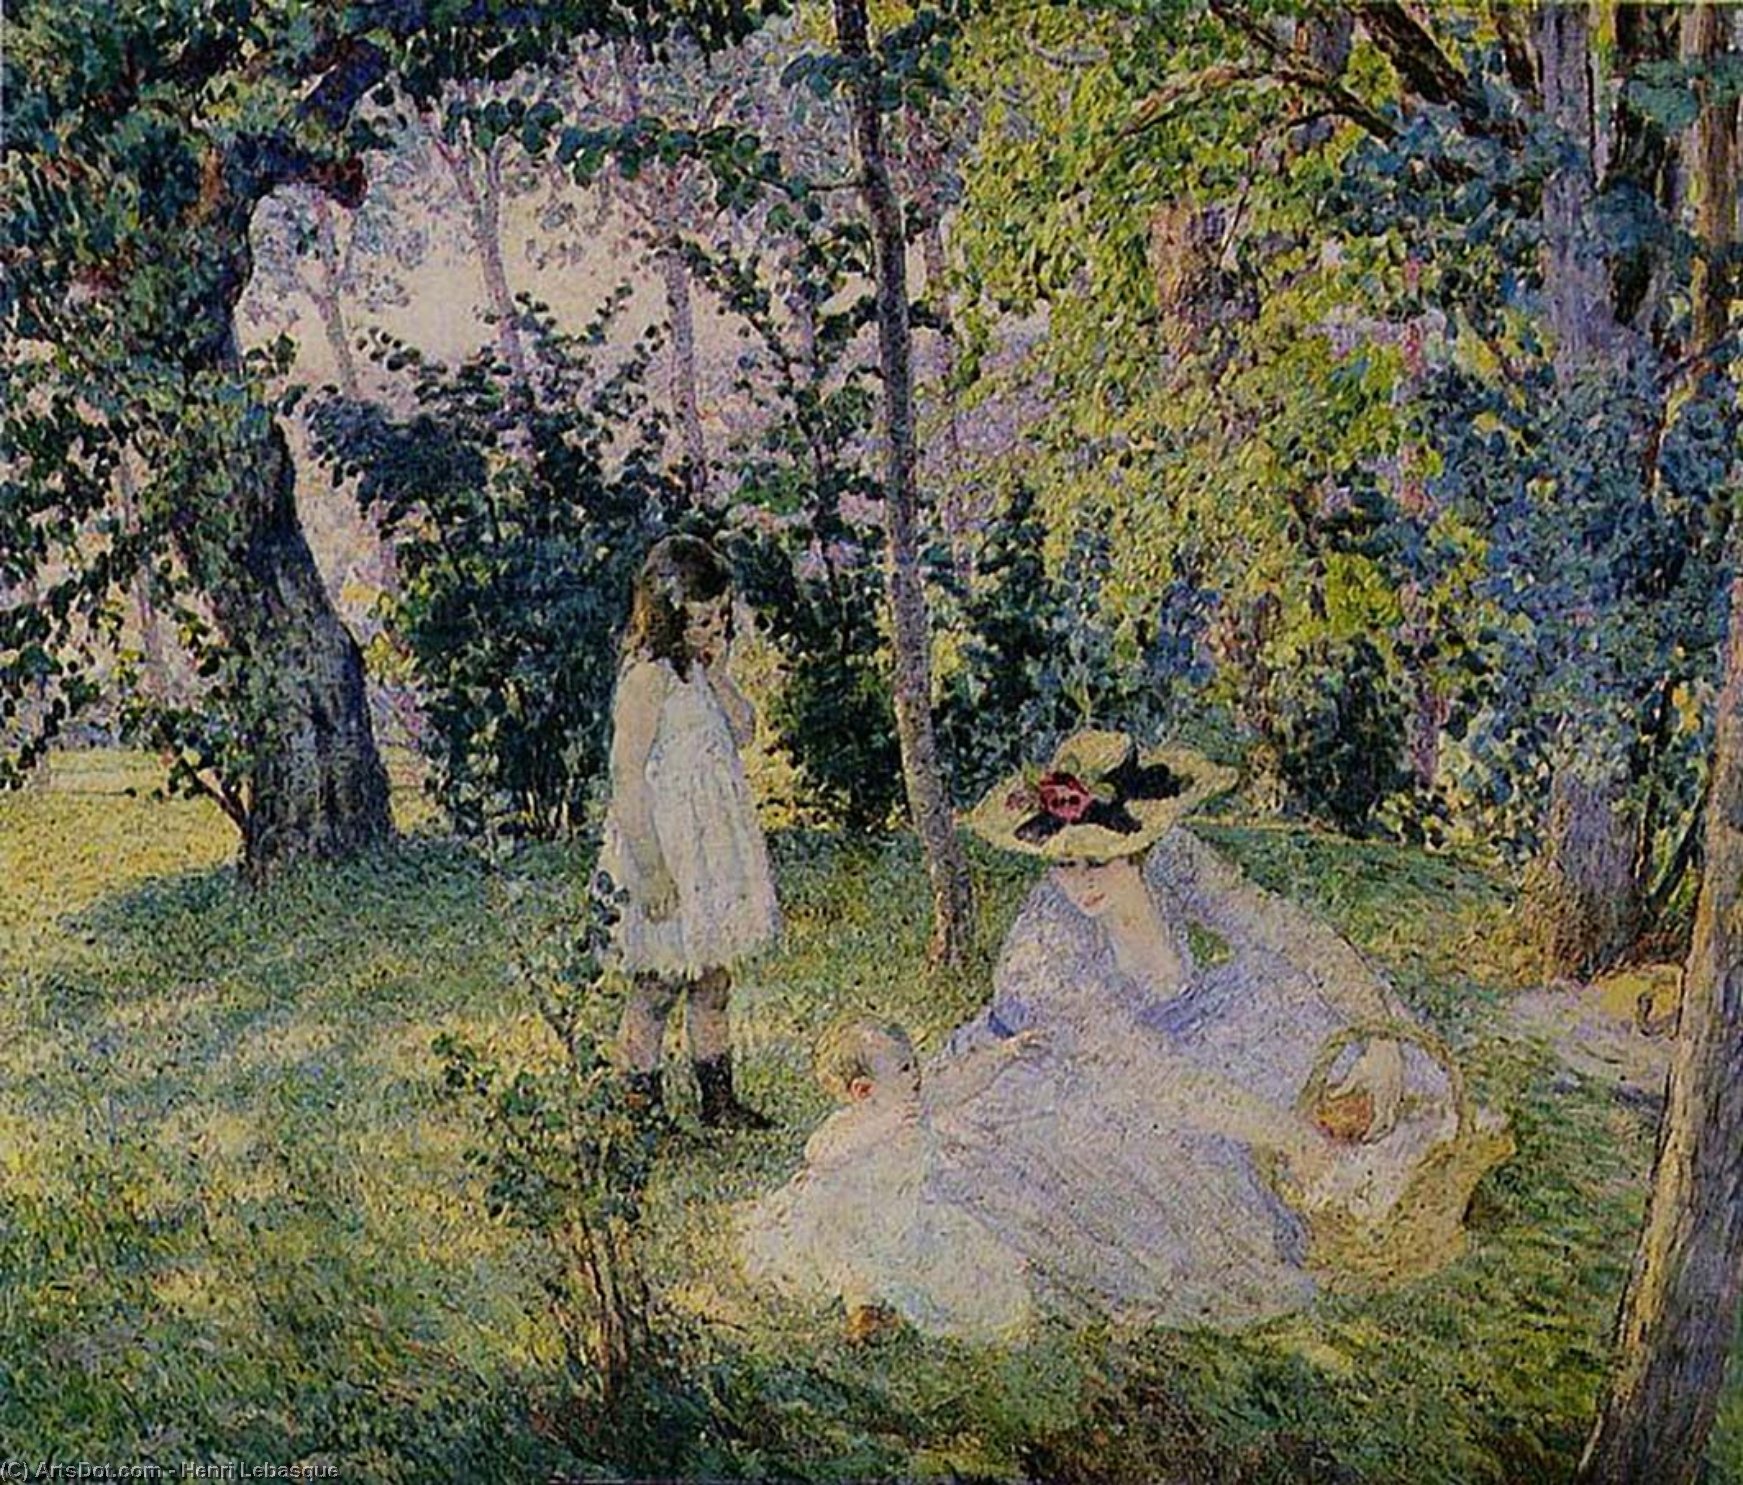 Пикник картина. Анри Лебаск художник картины. Анри Лебаск (1865 - 1937). Анри Лебаск картина в лесу. Картина художника"вечерня в лесу" Анри Лебаск Париж.